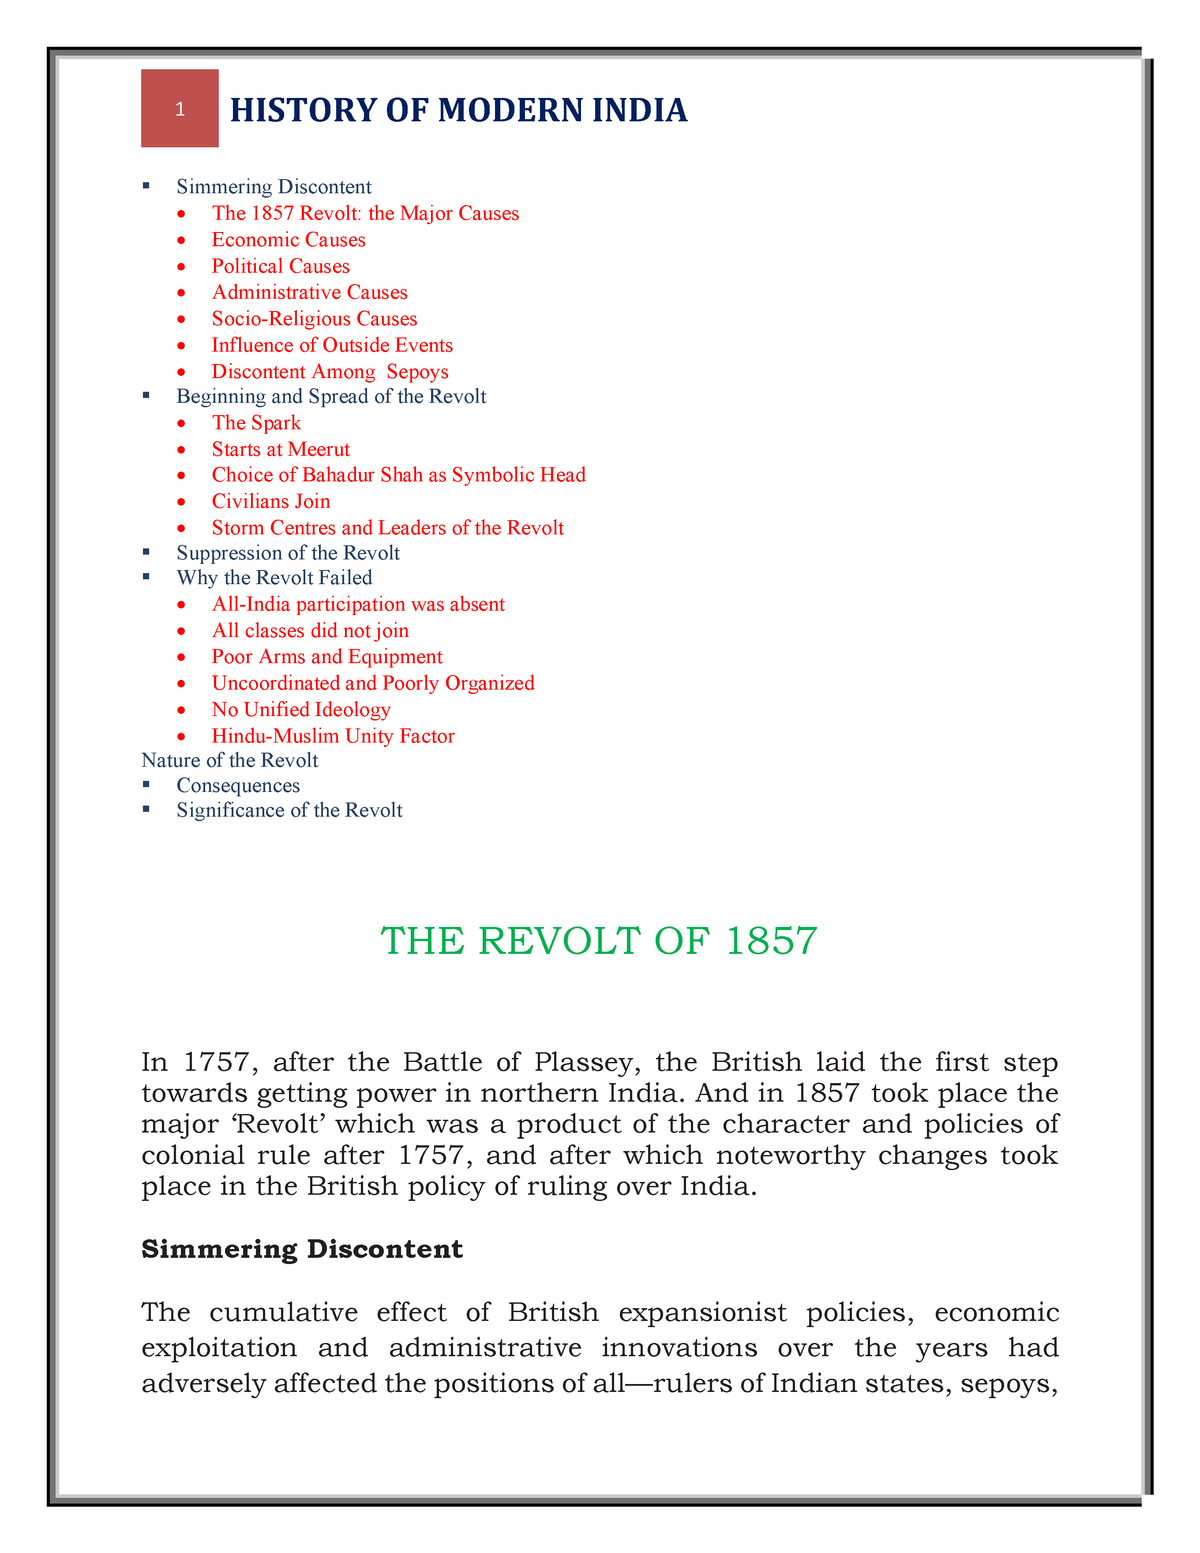 short essay on revolt of 1857